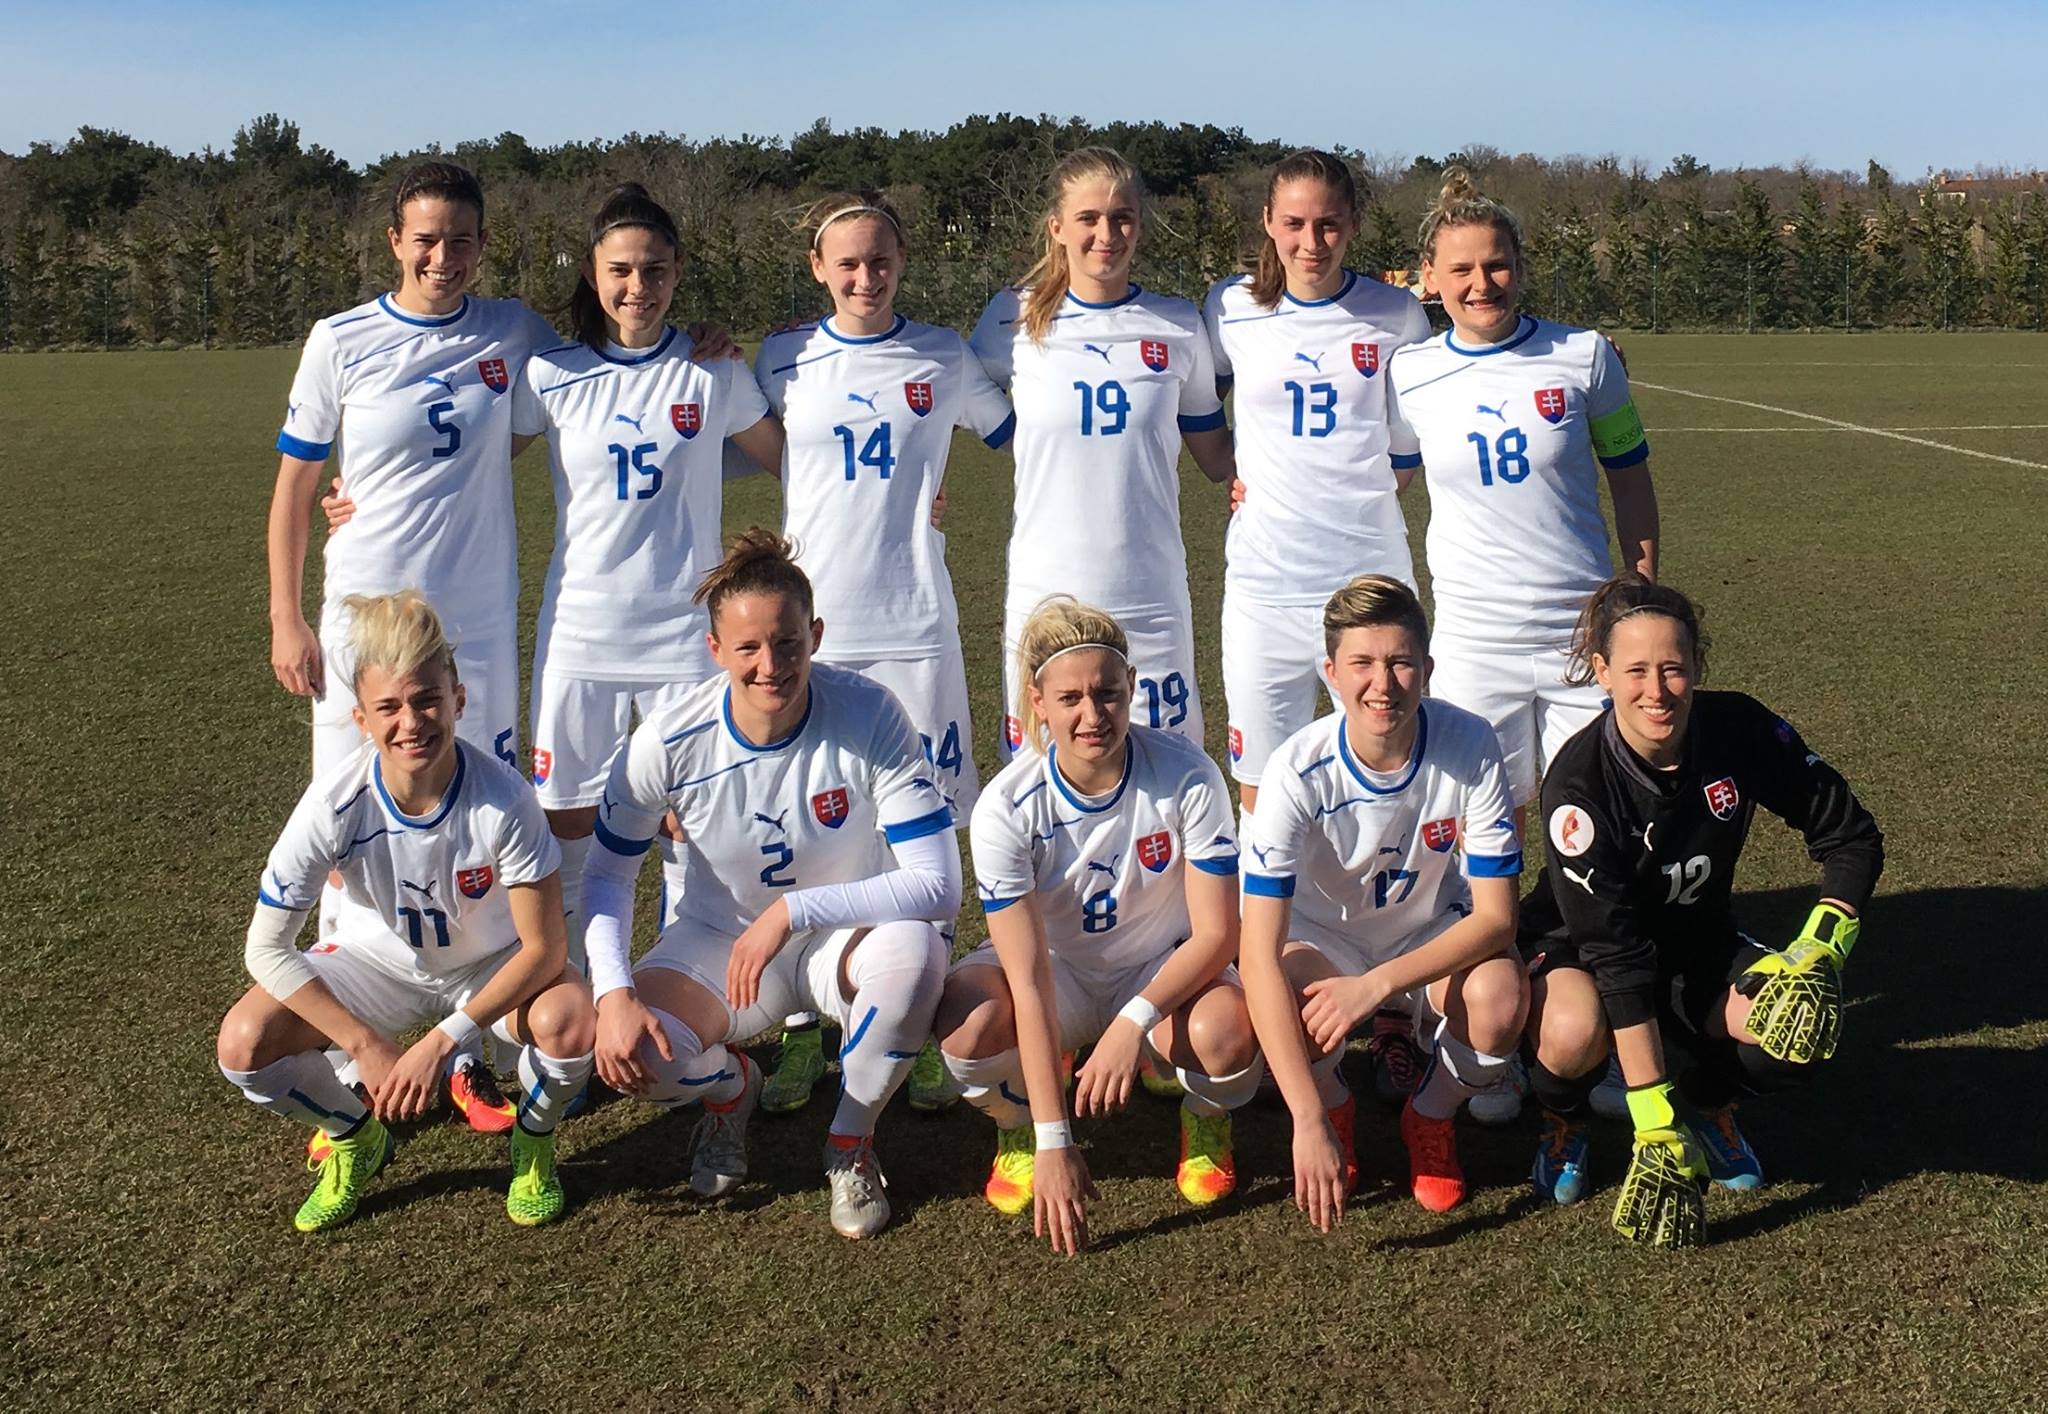 #IstriaWomensCup - Matchs de classement : SLOVAQUIE vainqueur, FRANCE B troisième